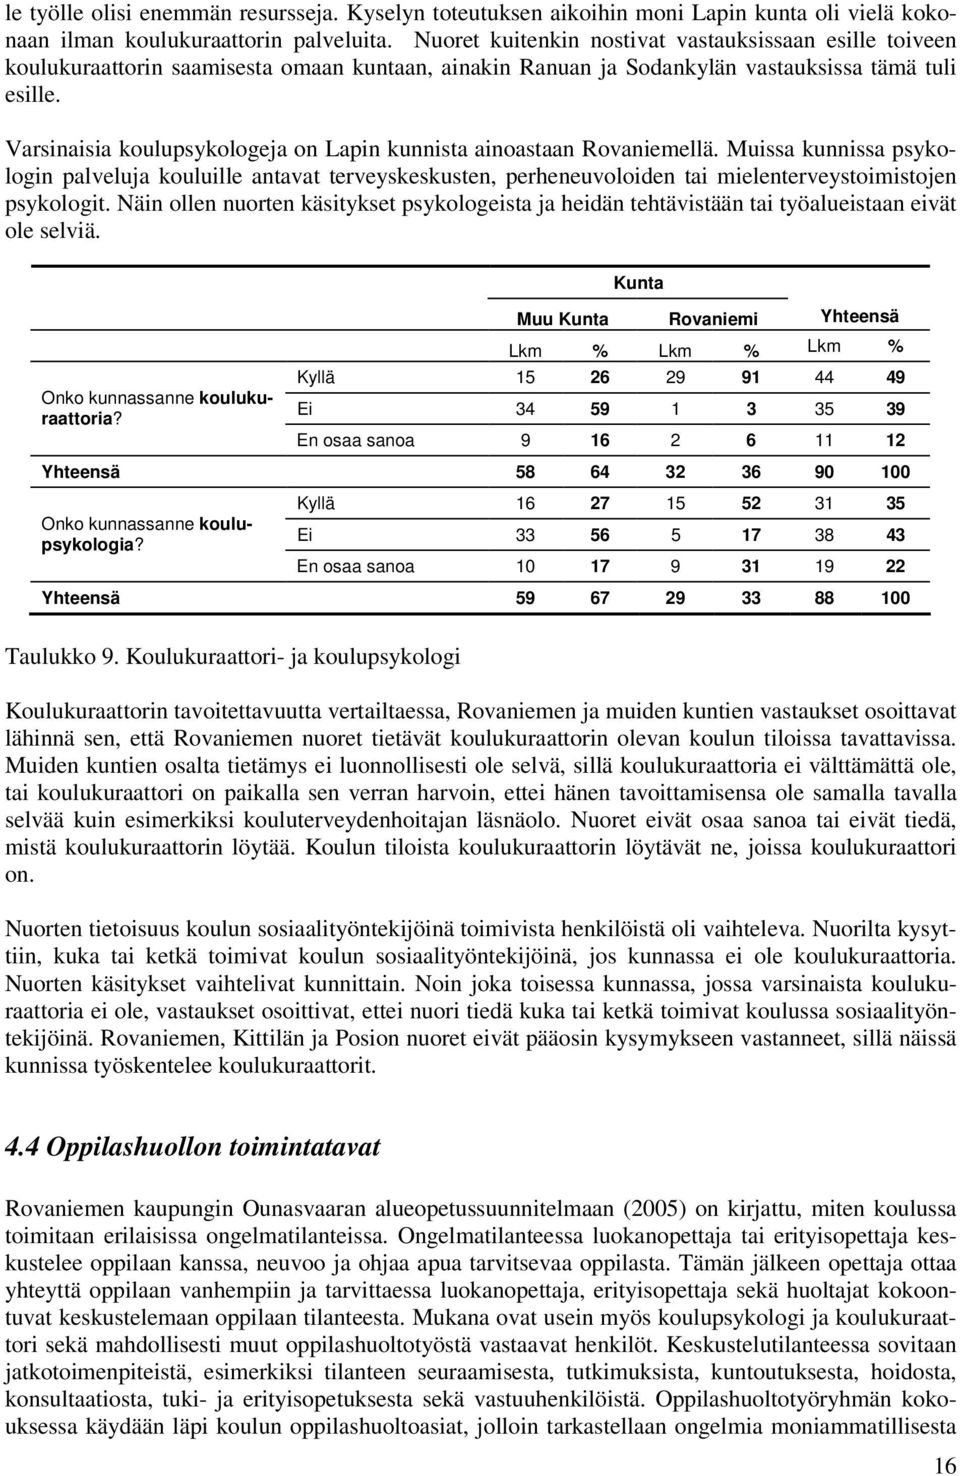 Varsinaisia koulupsykologeja on Lapin kunnista ainoastaan Rovaniemellä.